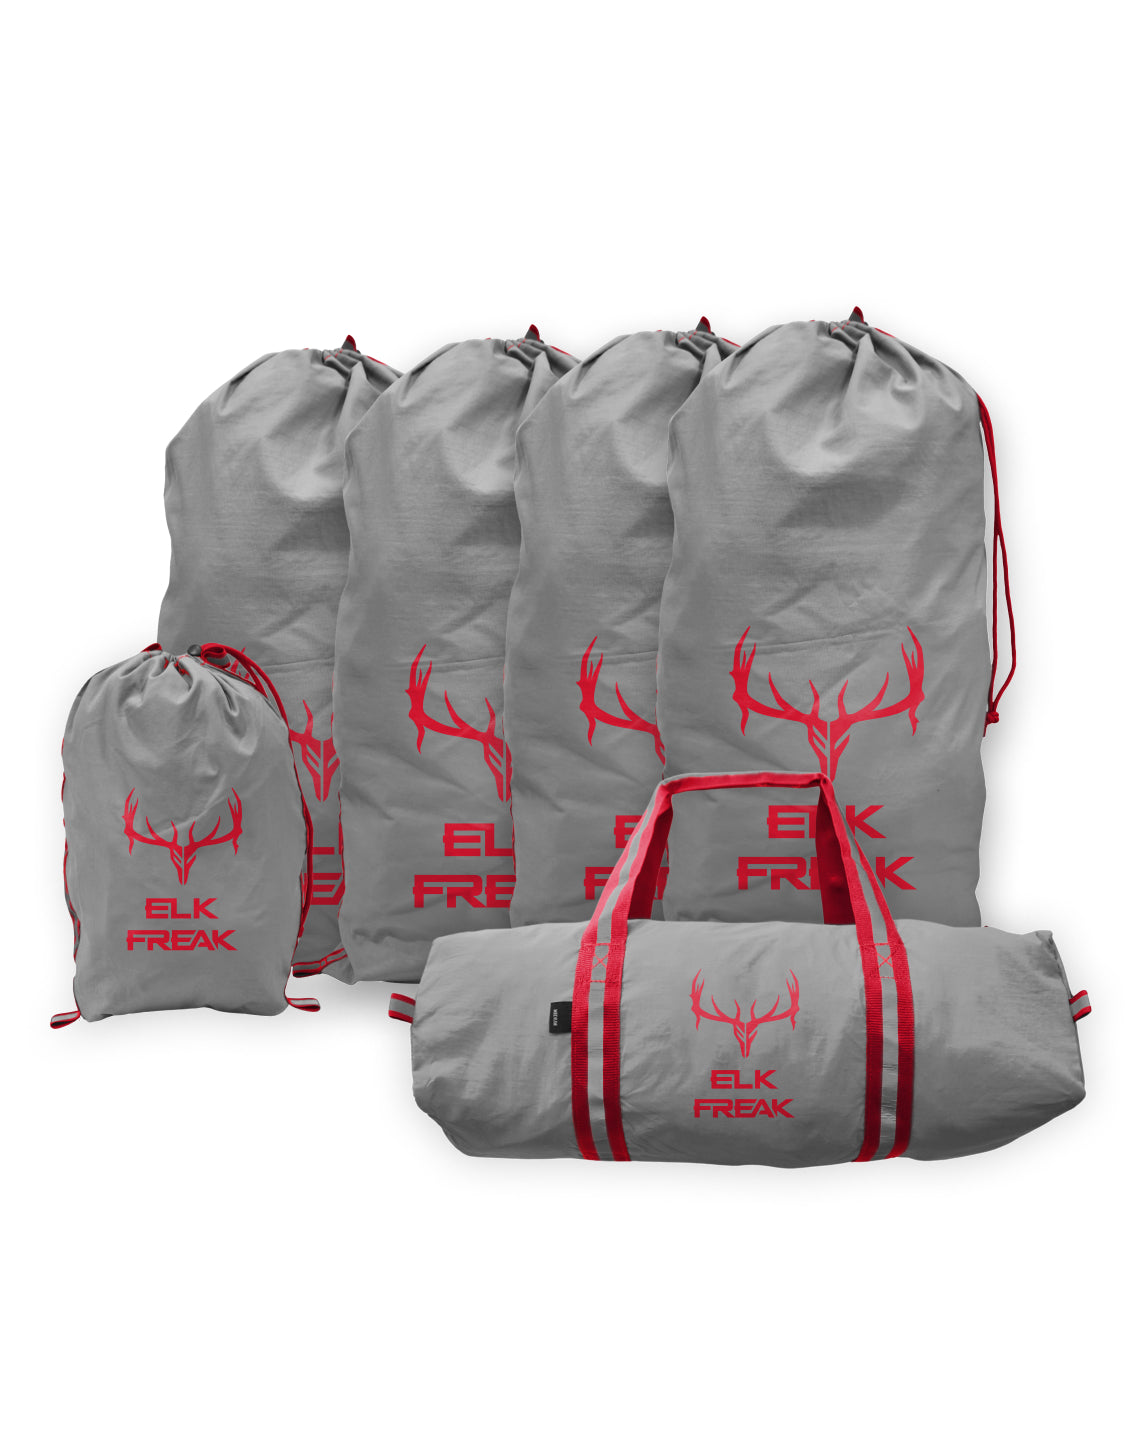 Elk Freak Game Bag Set in signature gray, designed for efficient elk meat storage and preservation.